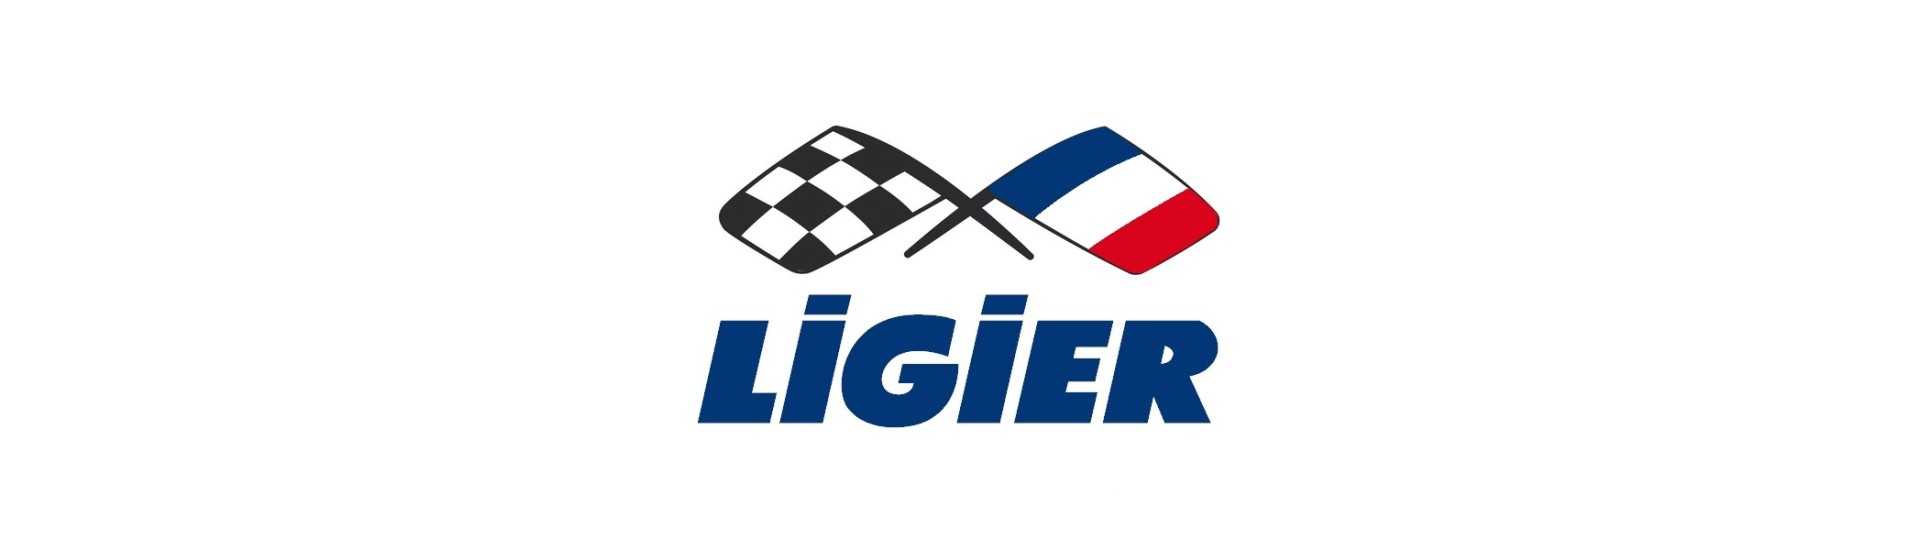 Coletor de escape no melhor preço do carro sem uma permissão Ligier